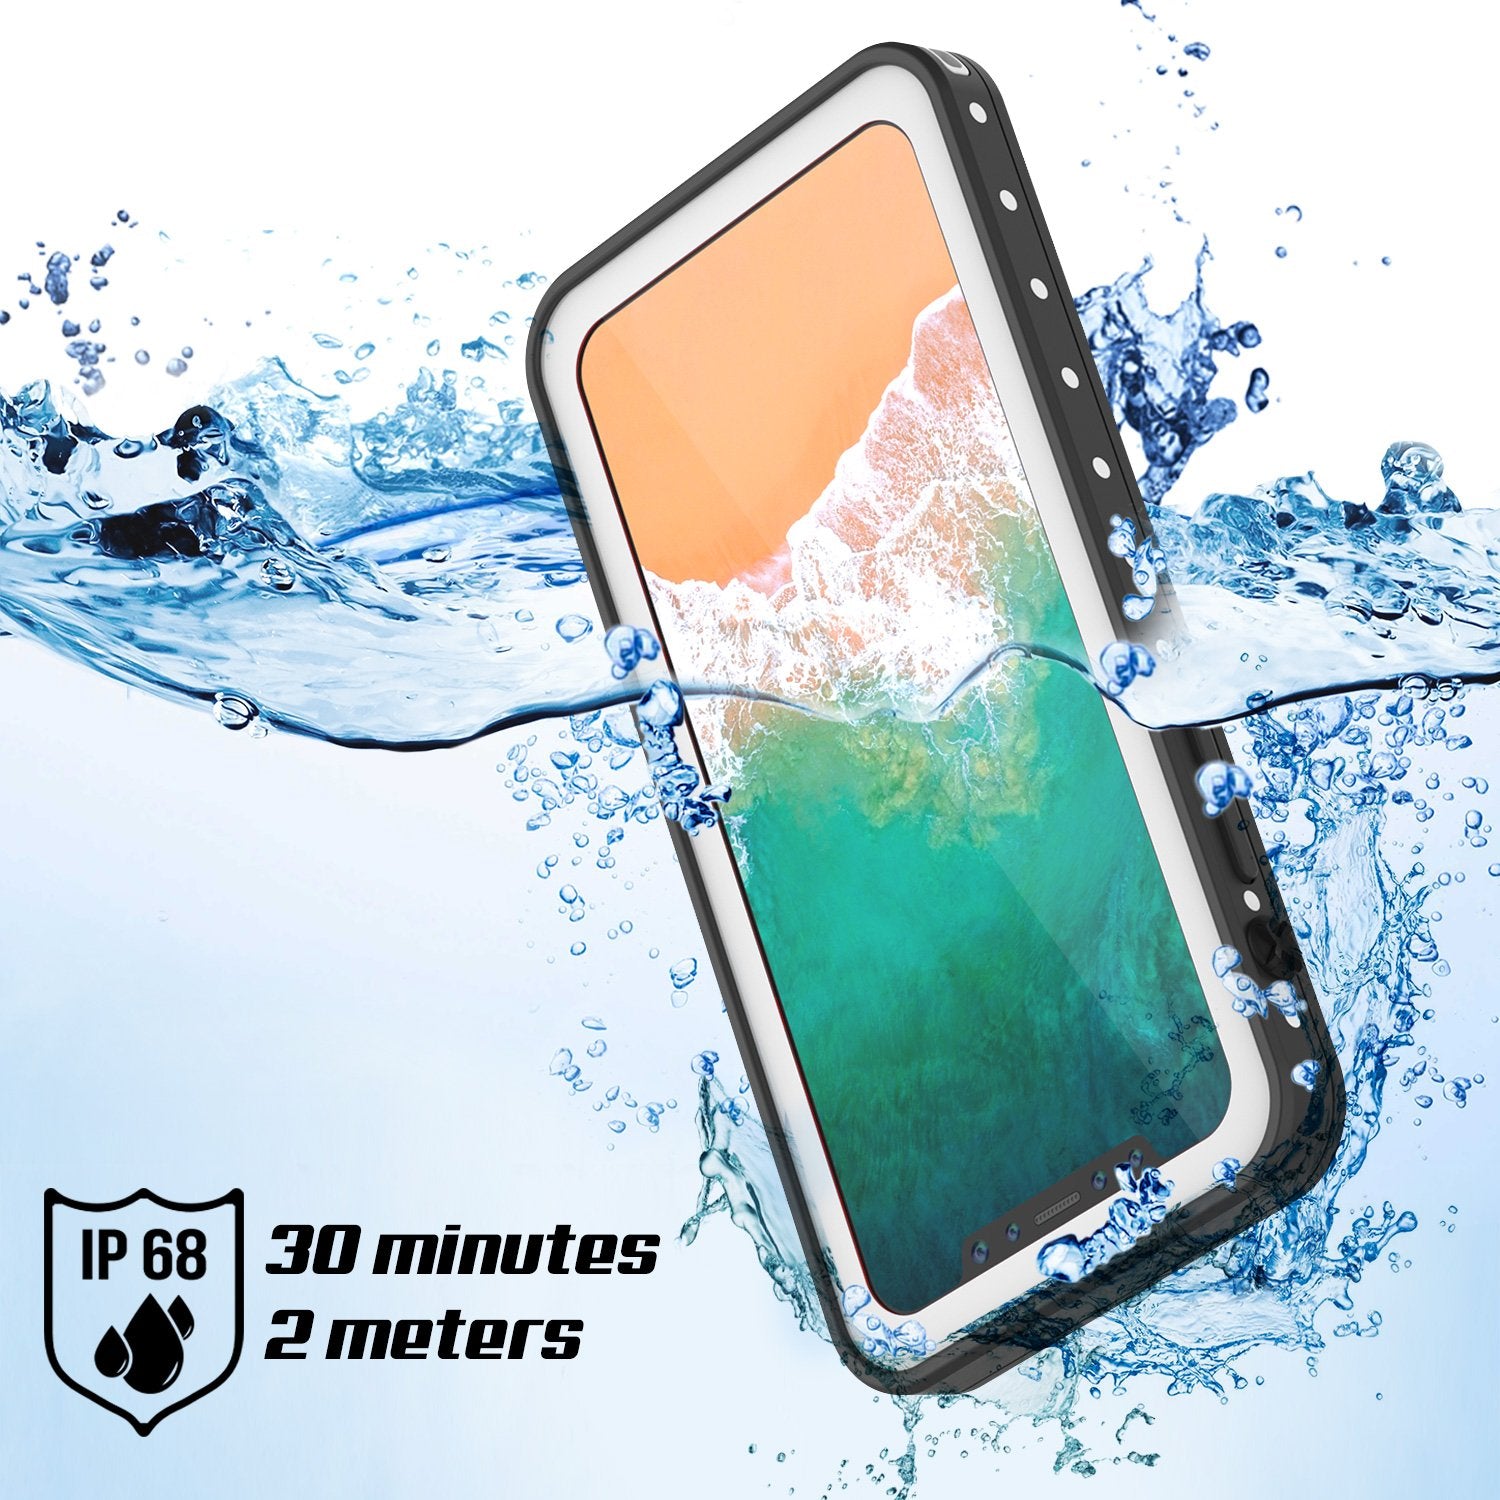 iPhone X Waterproof IP68 Case, Punkcase [White] [StudStar Series] [Slim Fit] [Dirtproof]